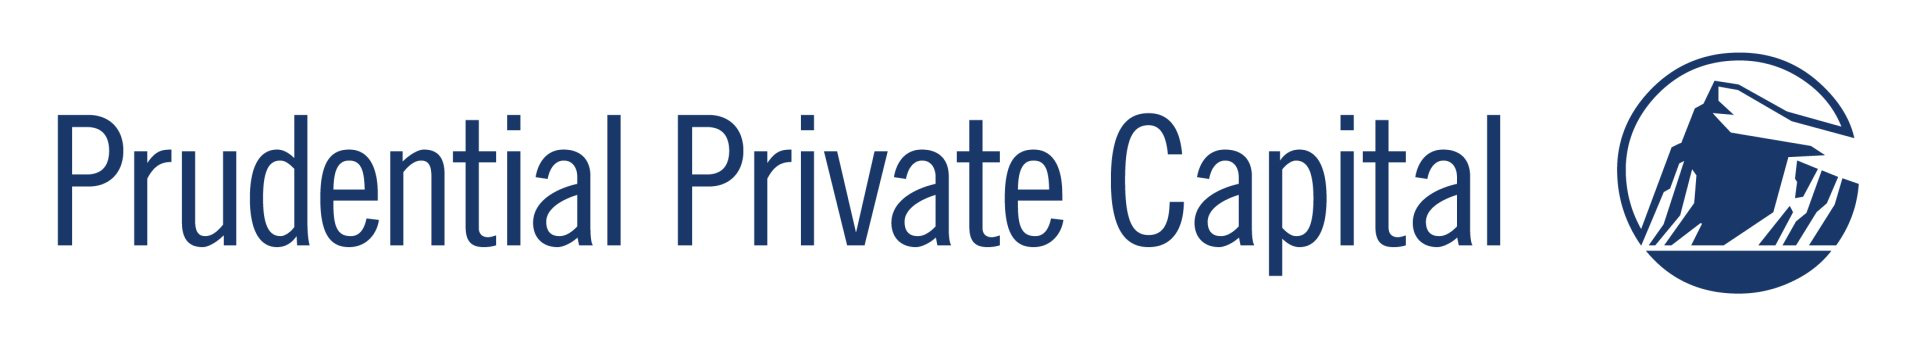 Prudential Private Capital Logo